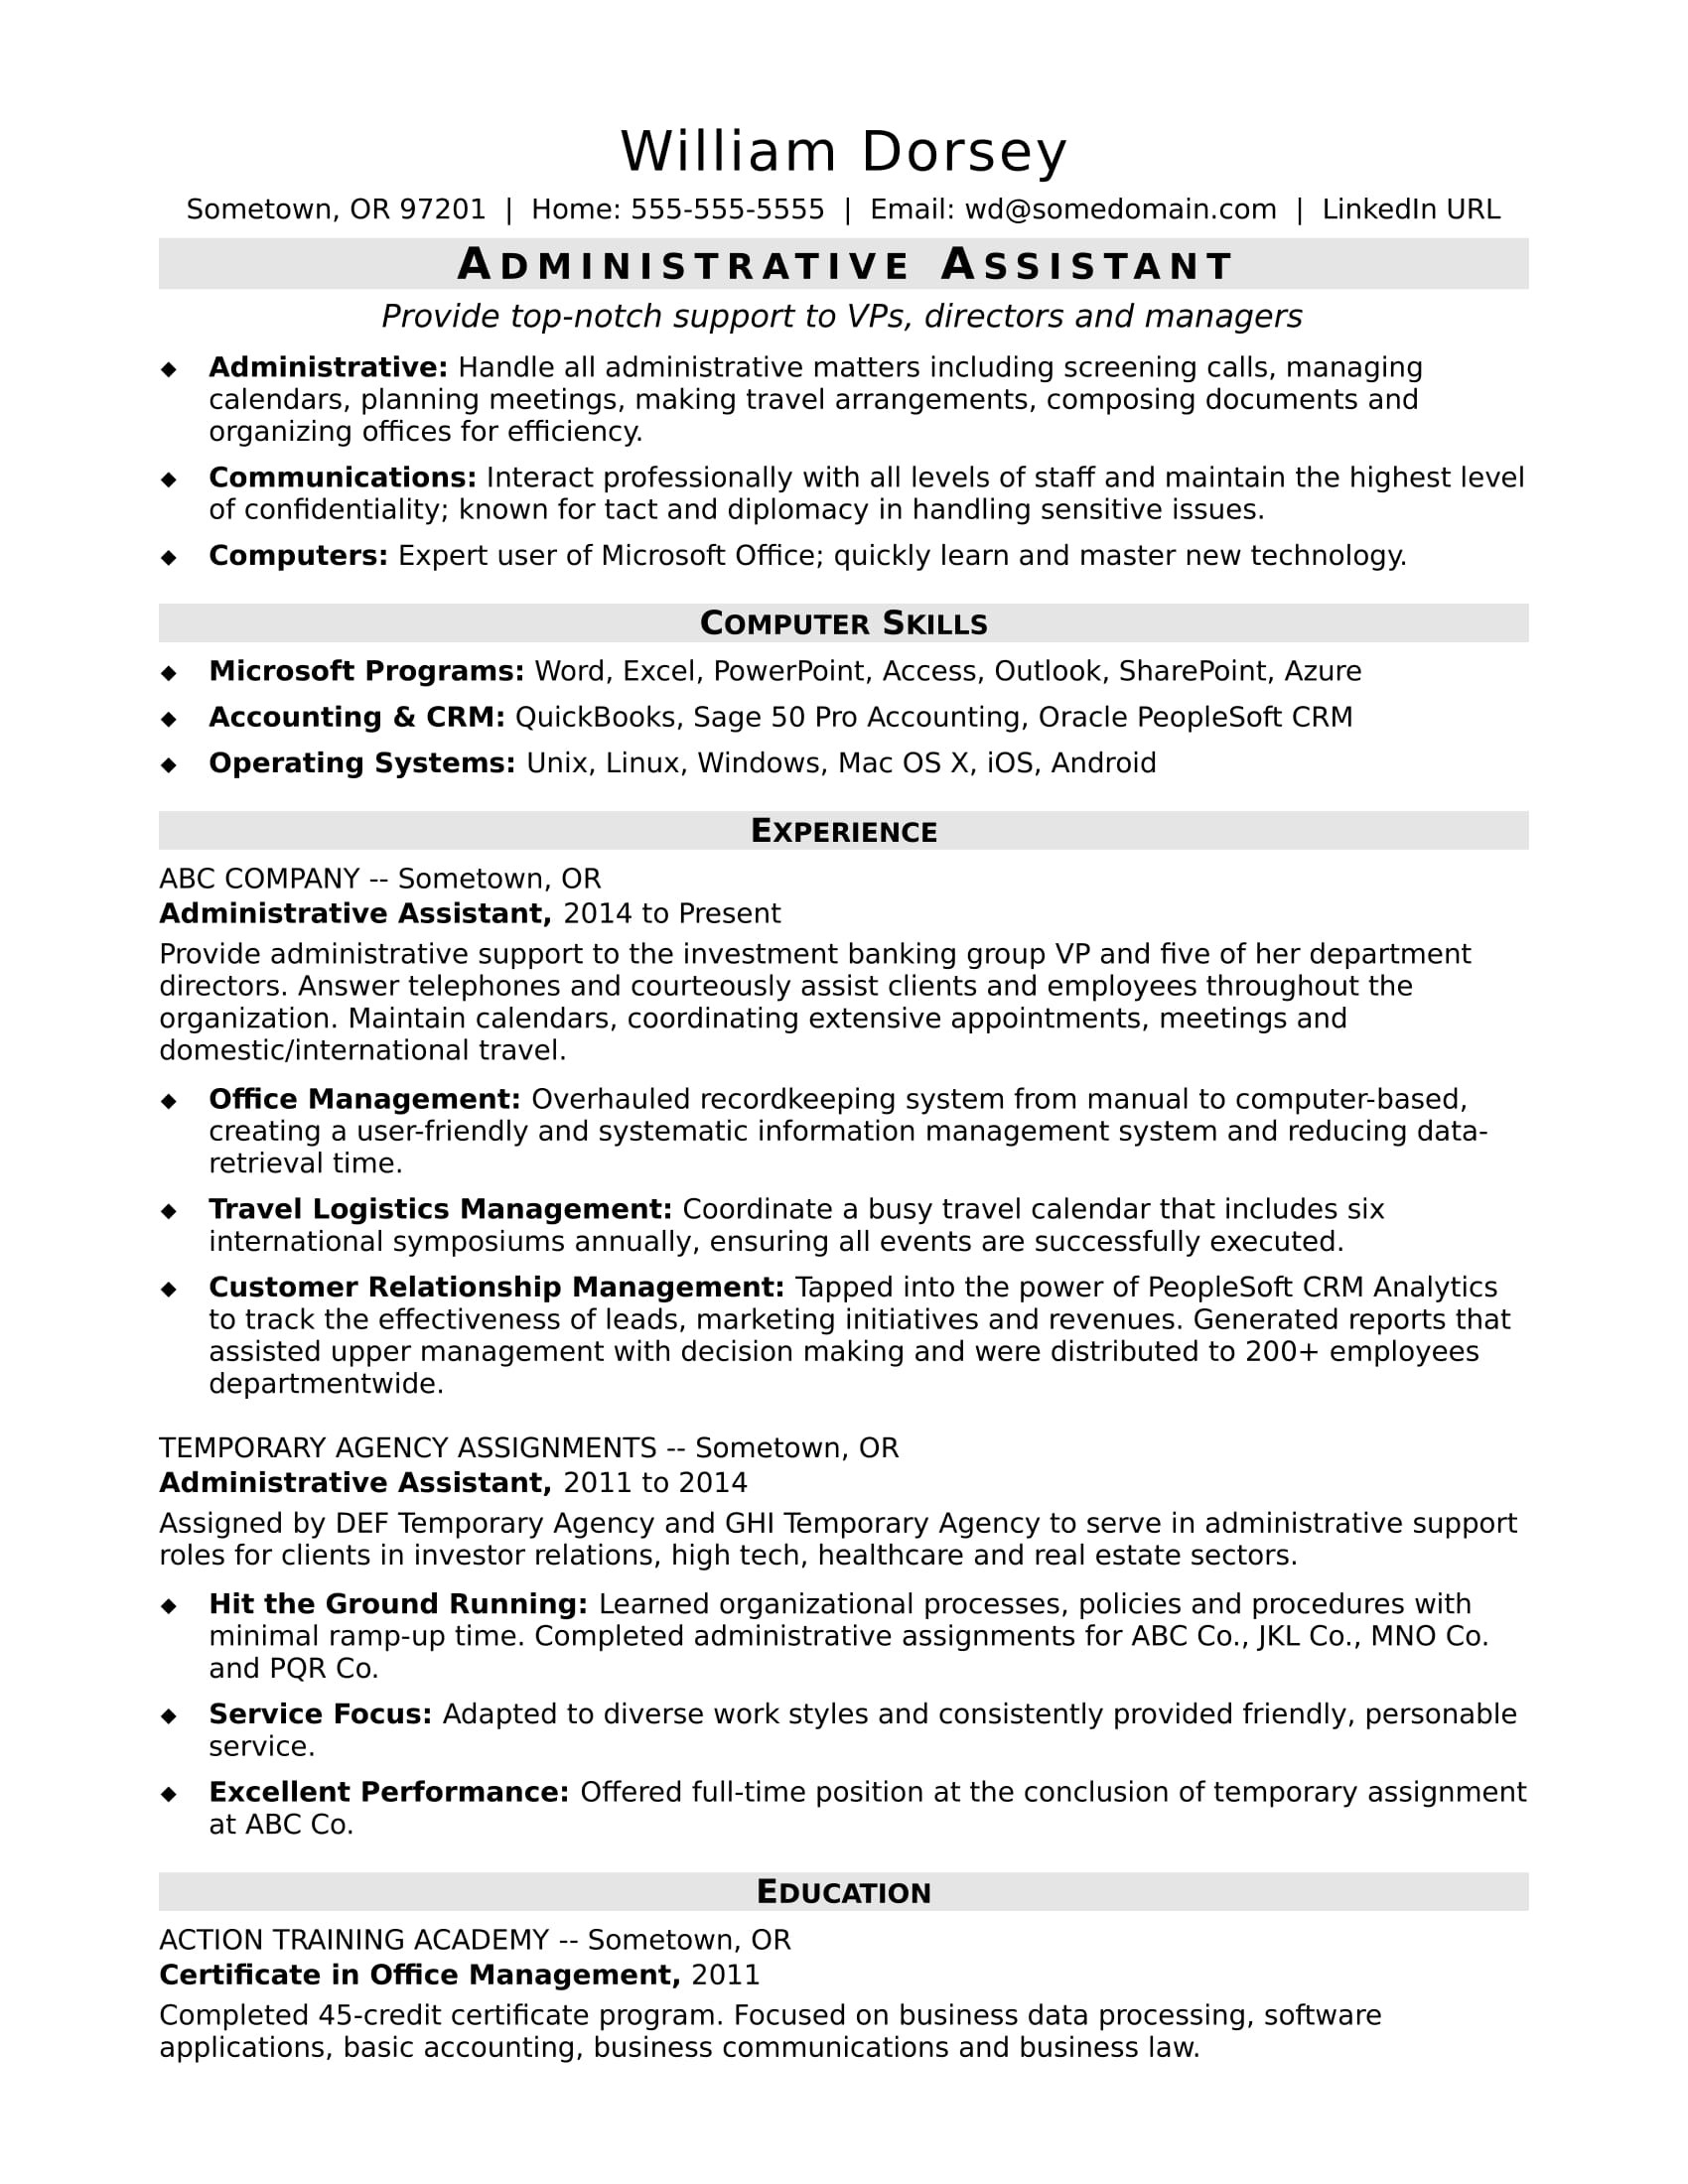 Resume Samples for Entry Level Administrative assistant Administrative assistant Resume Sample Monster.com